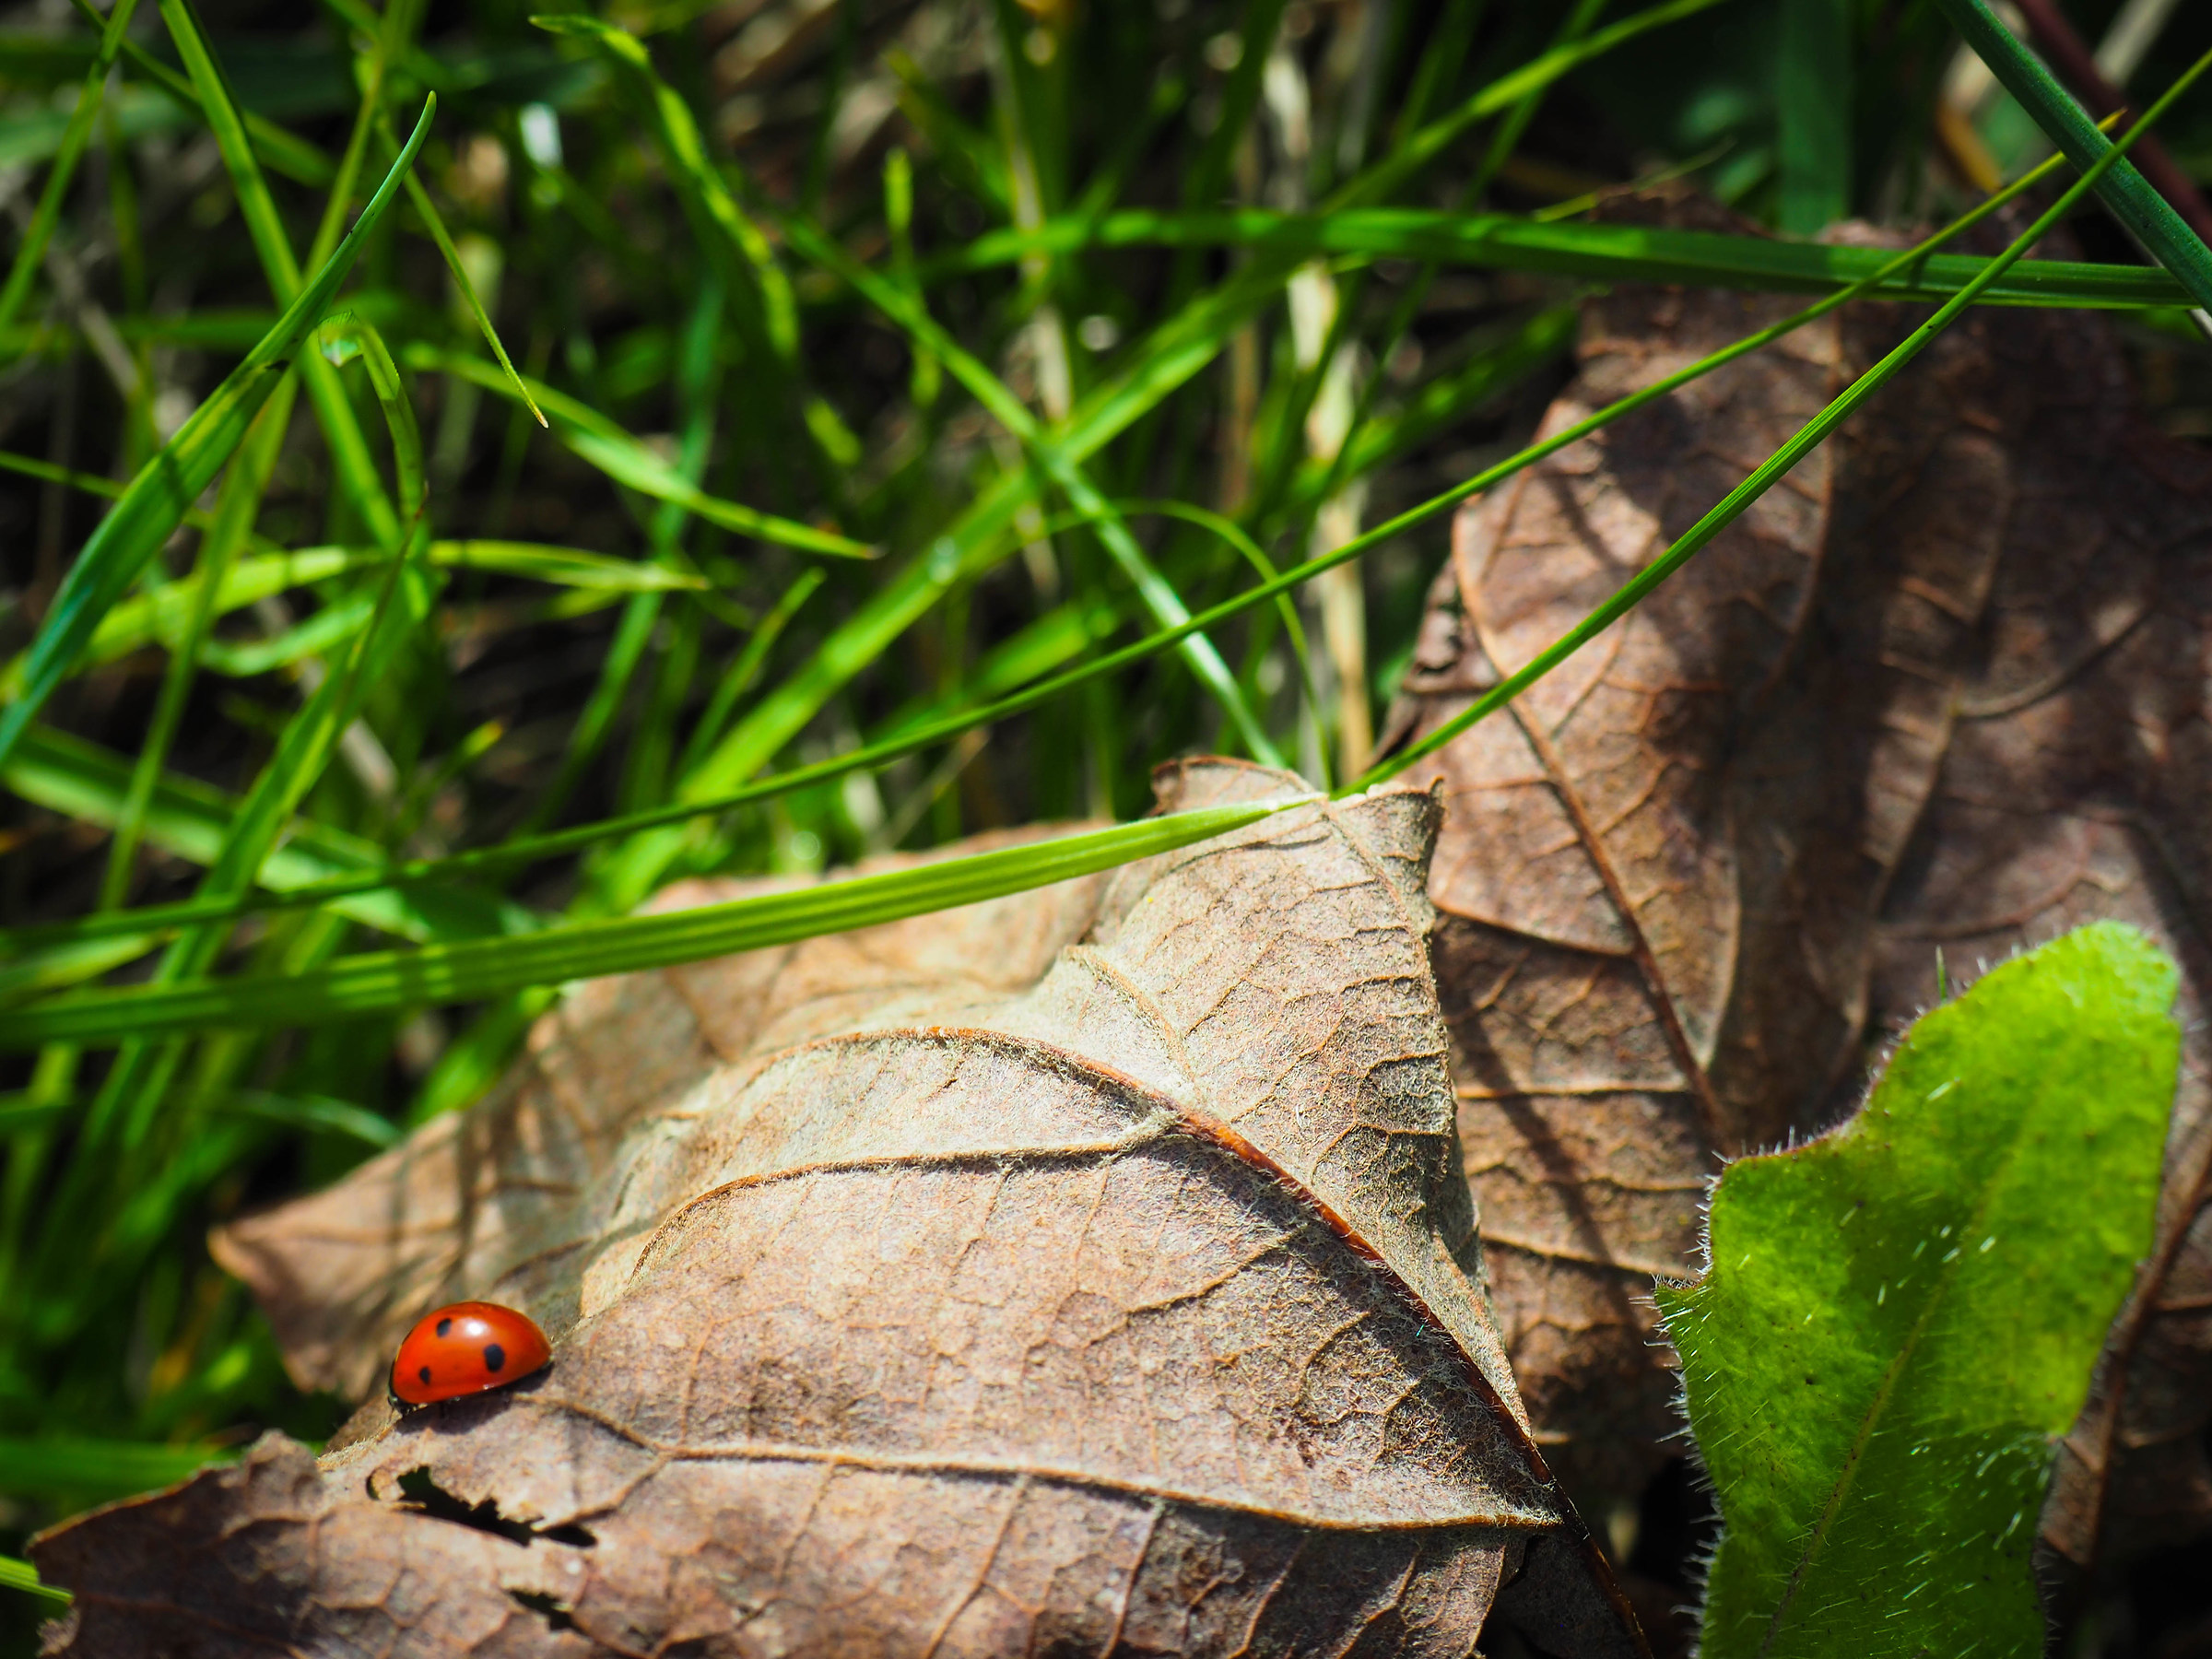 Little ladybug...